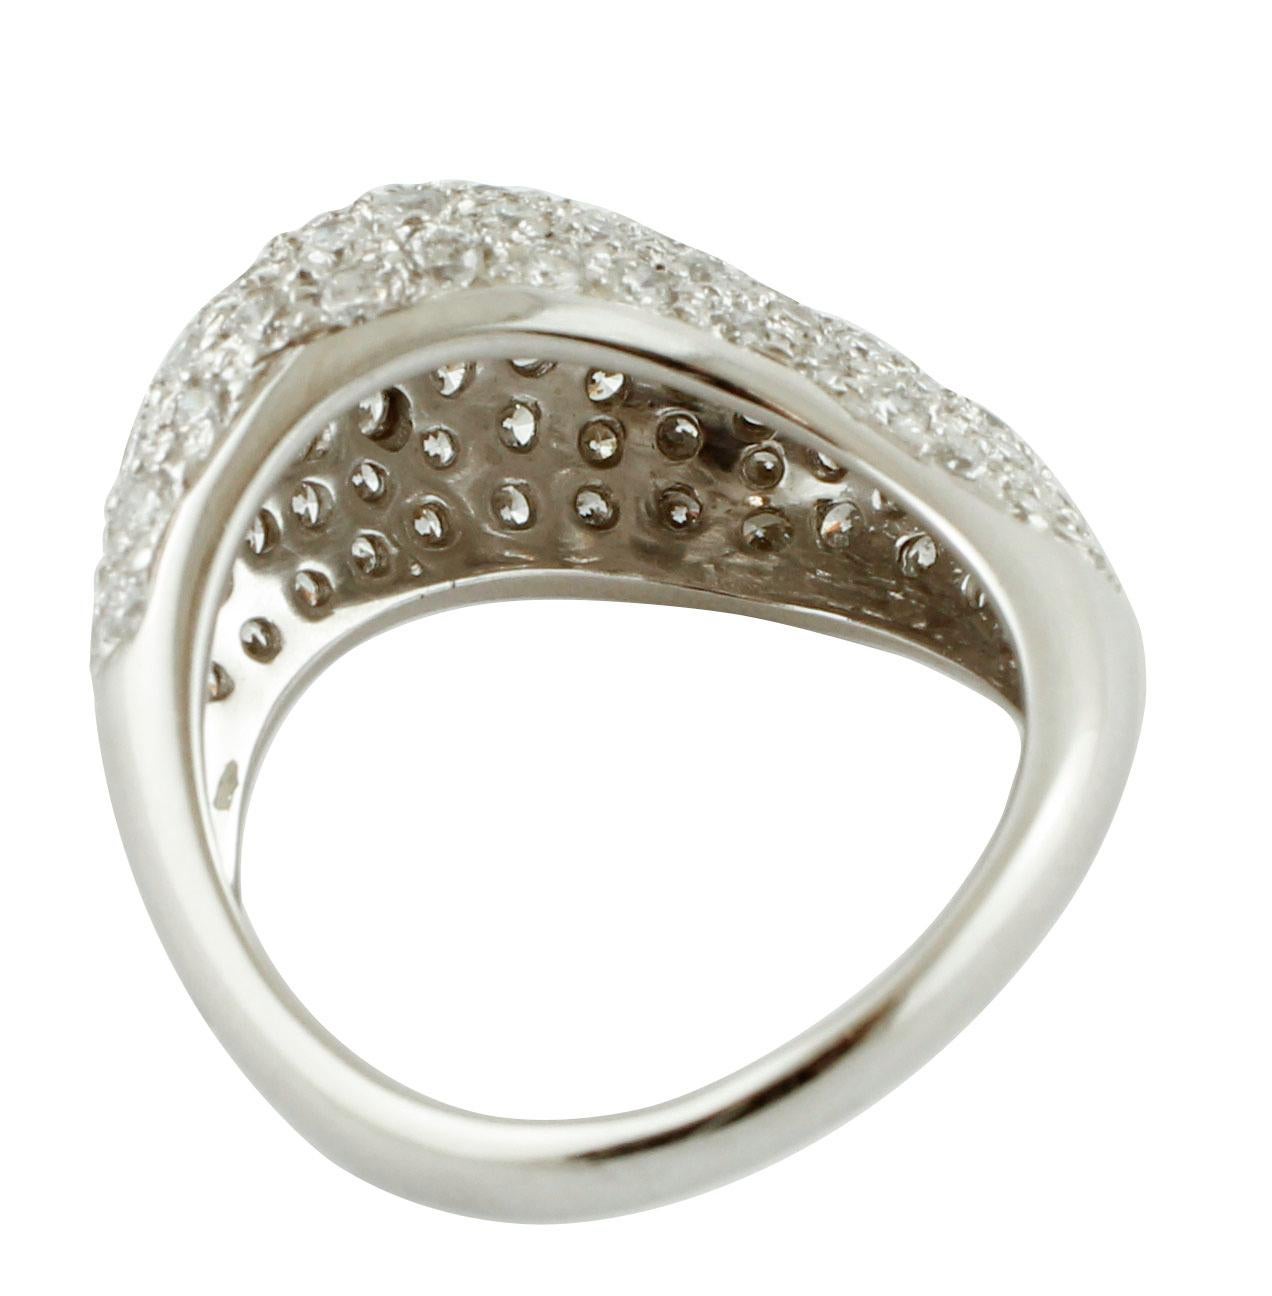 Brilliant Cut White Diamonds, 18 Karat White Gold Fashion Ring For Sale